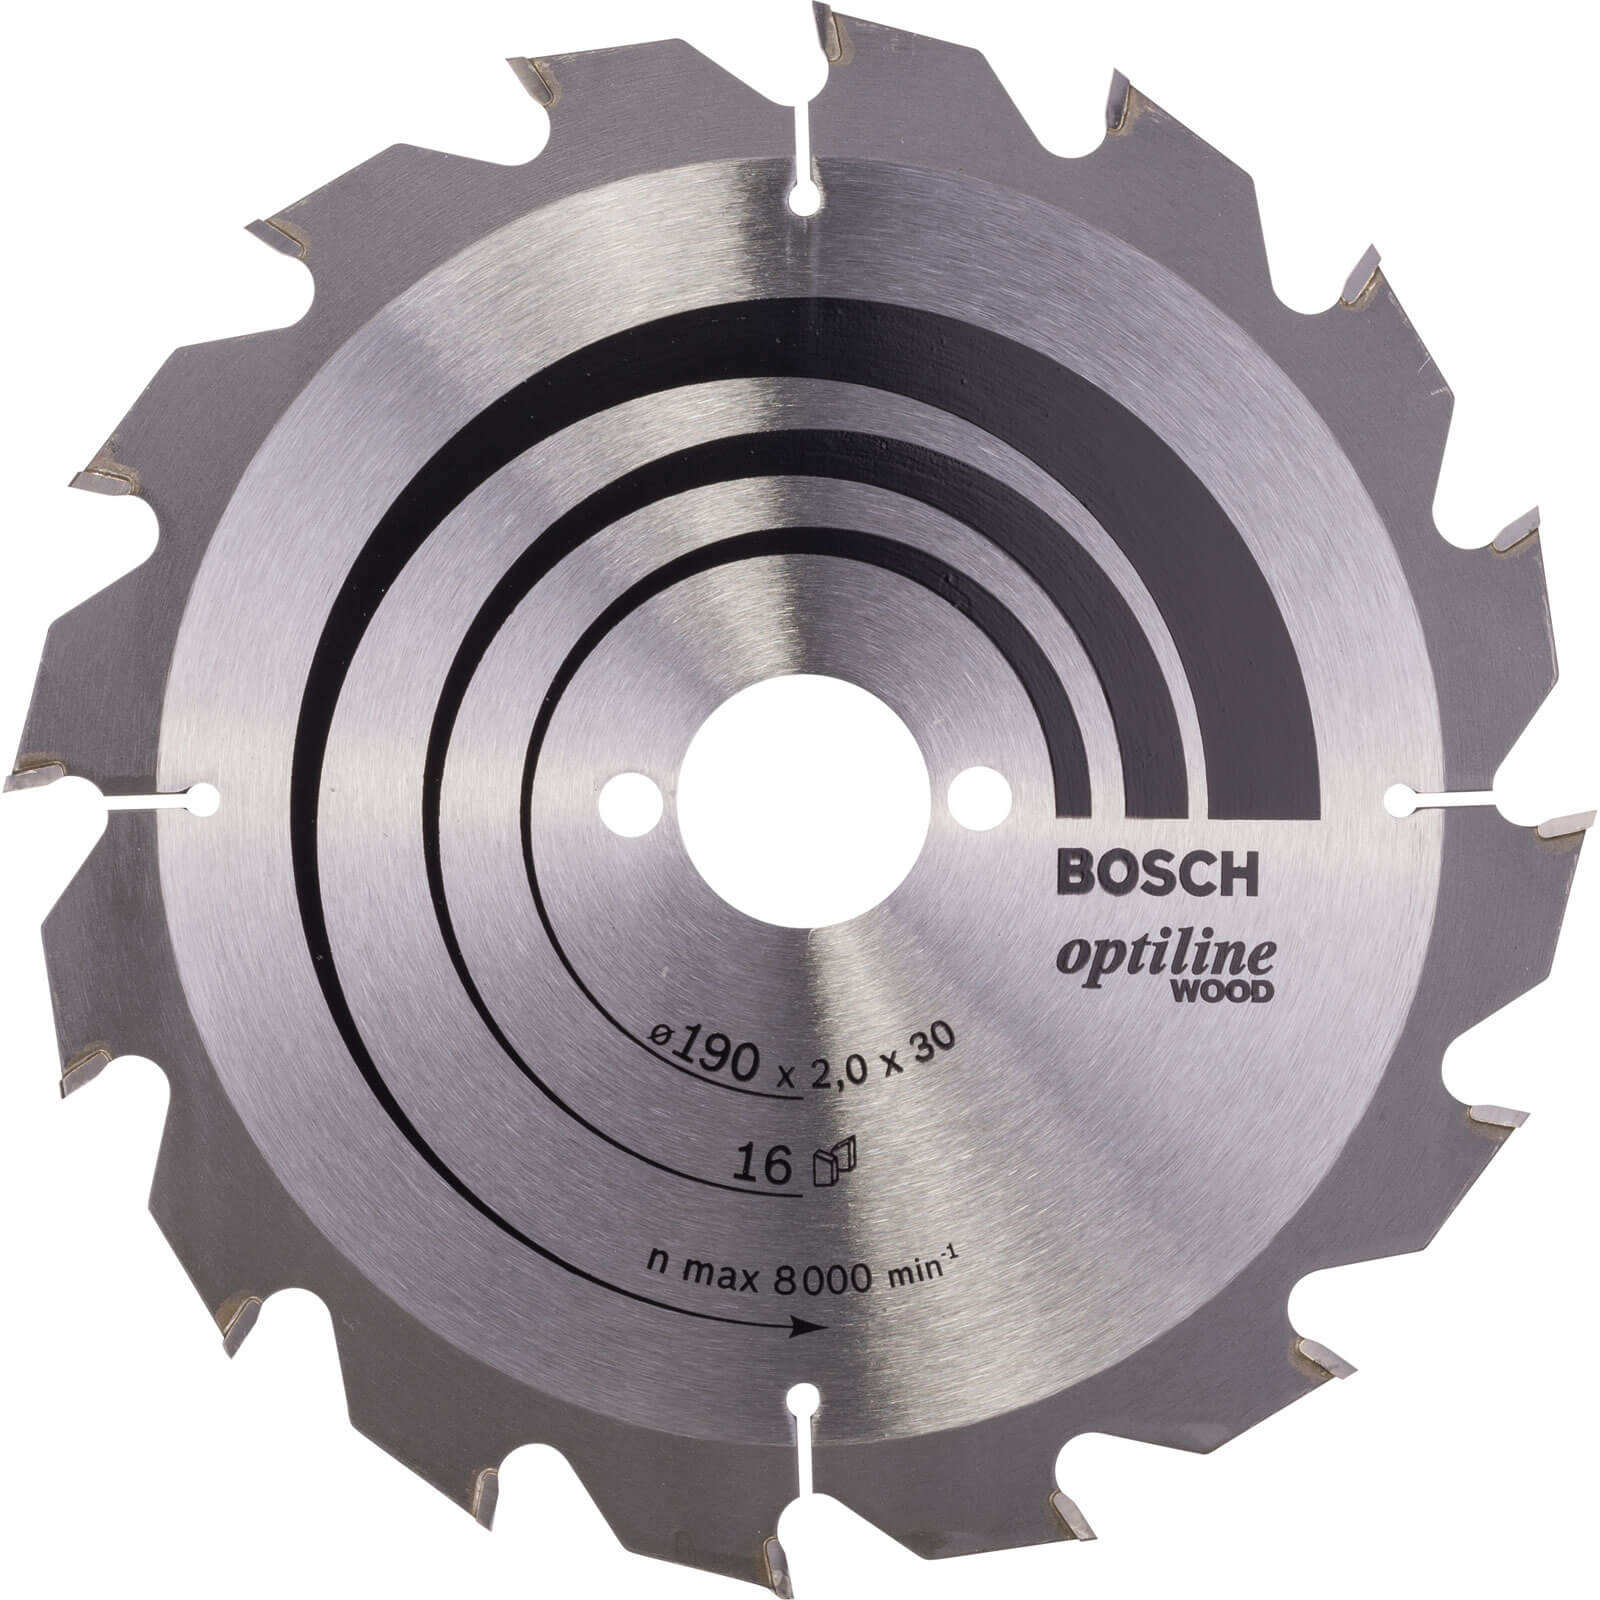 Bosch Optiline Wood Cutting Saw Blade 190mm 16T 30mm